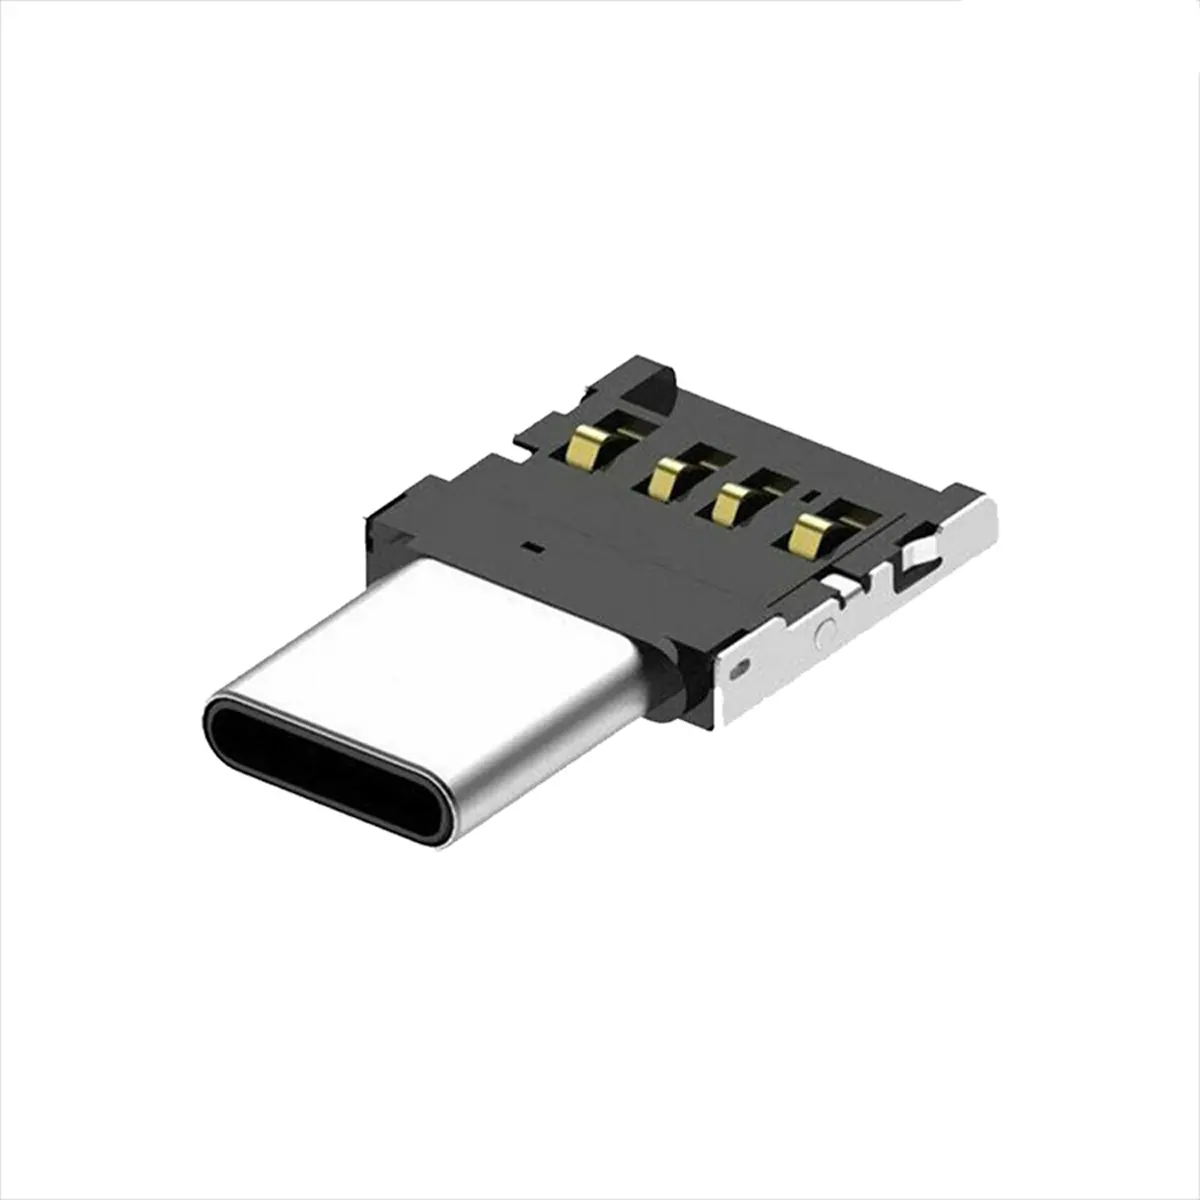 تبدیل مبدل OTG تسکو USB به USB-C مدل TCR 957